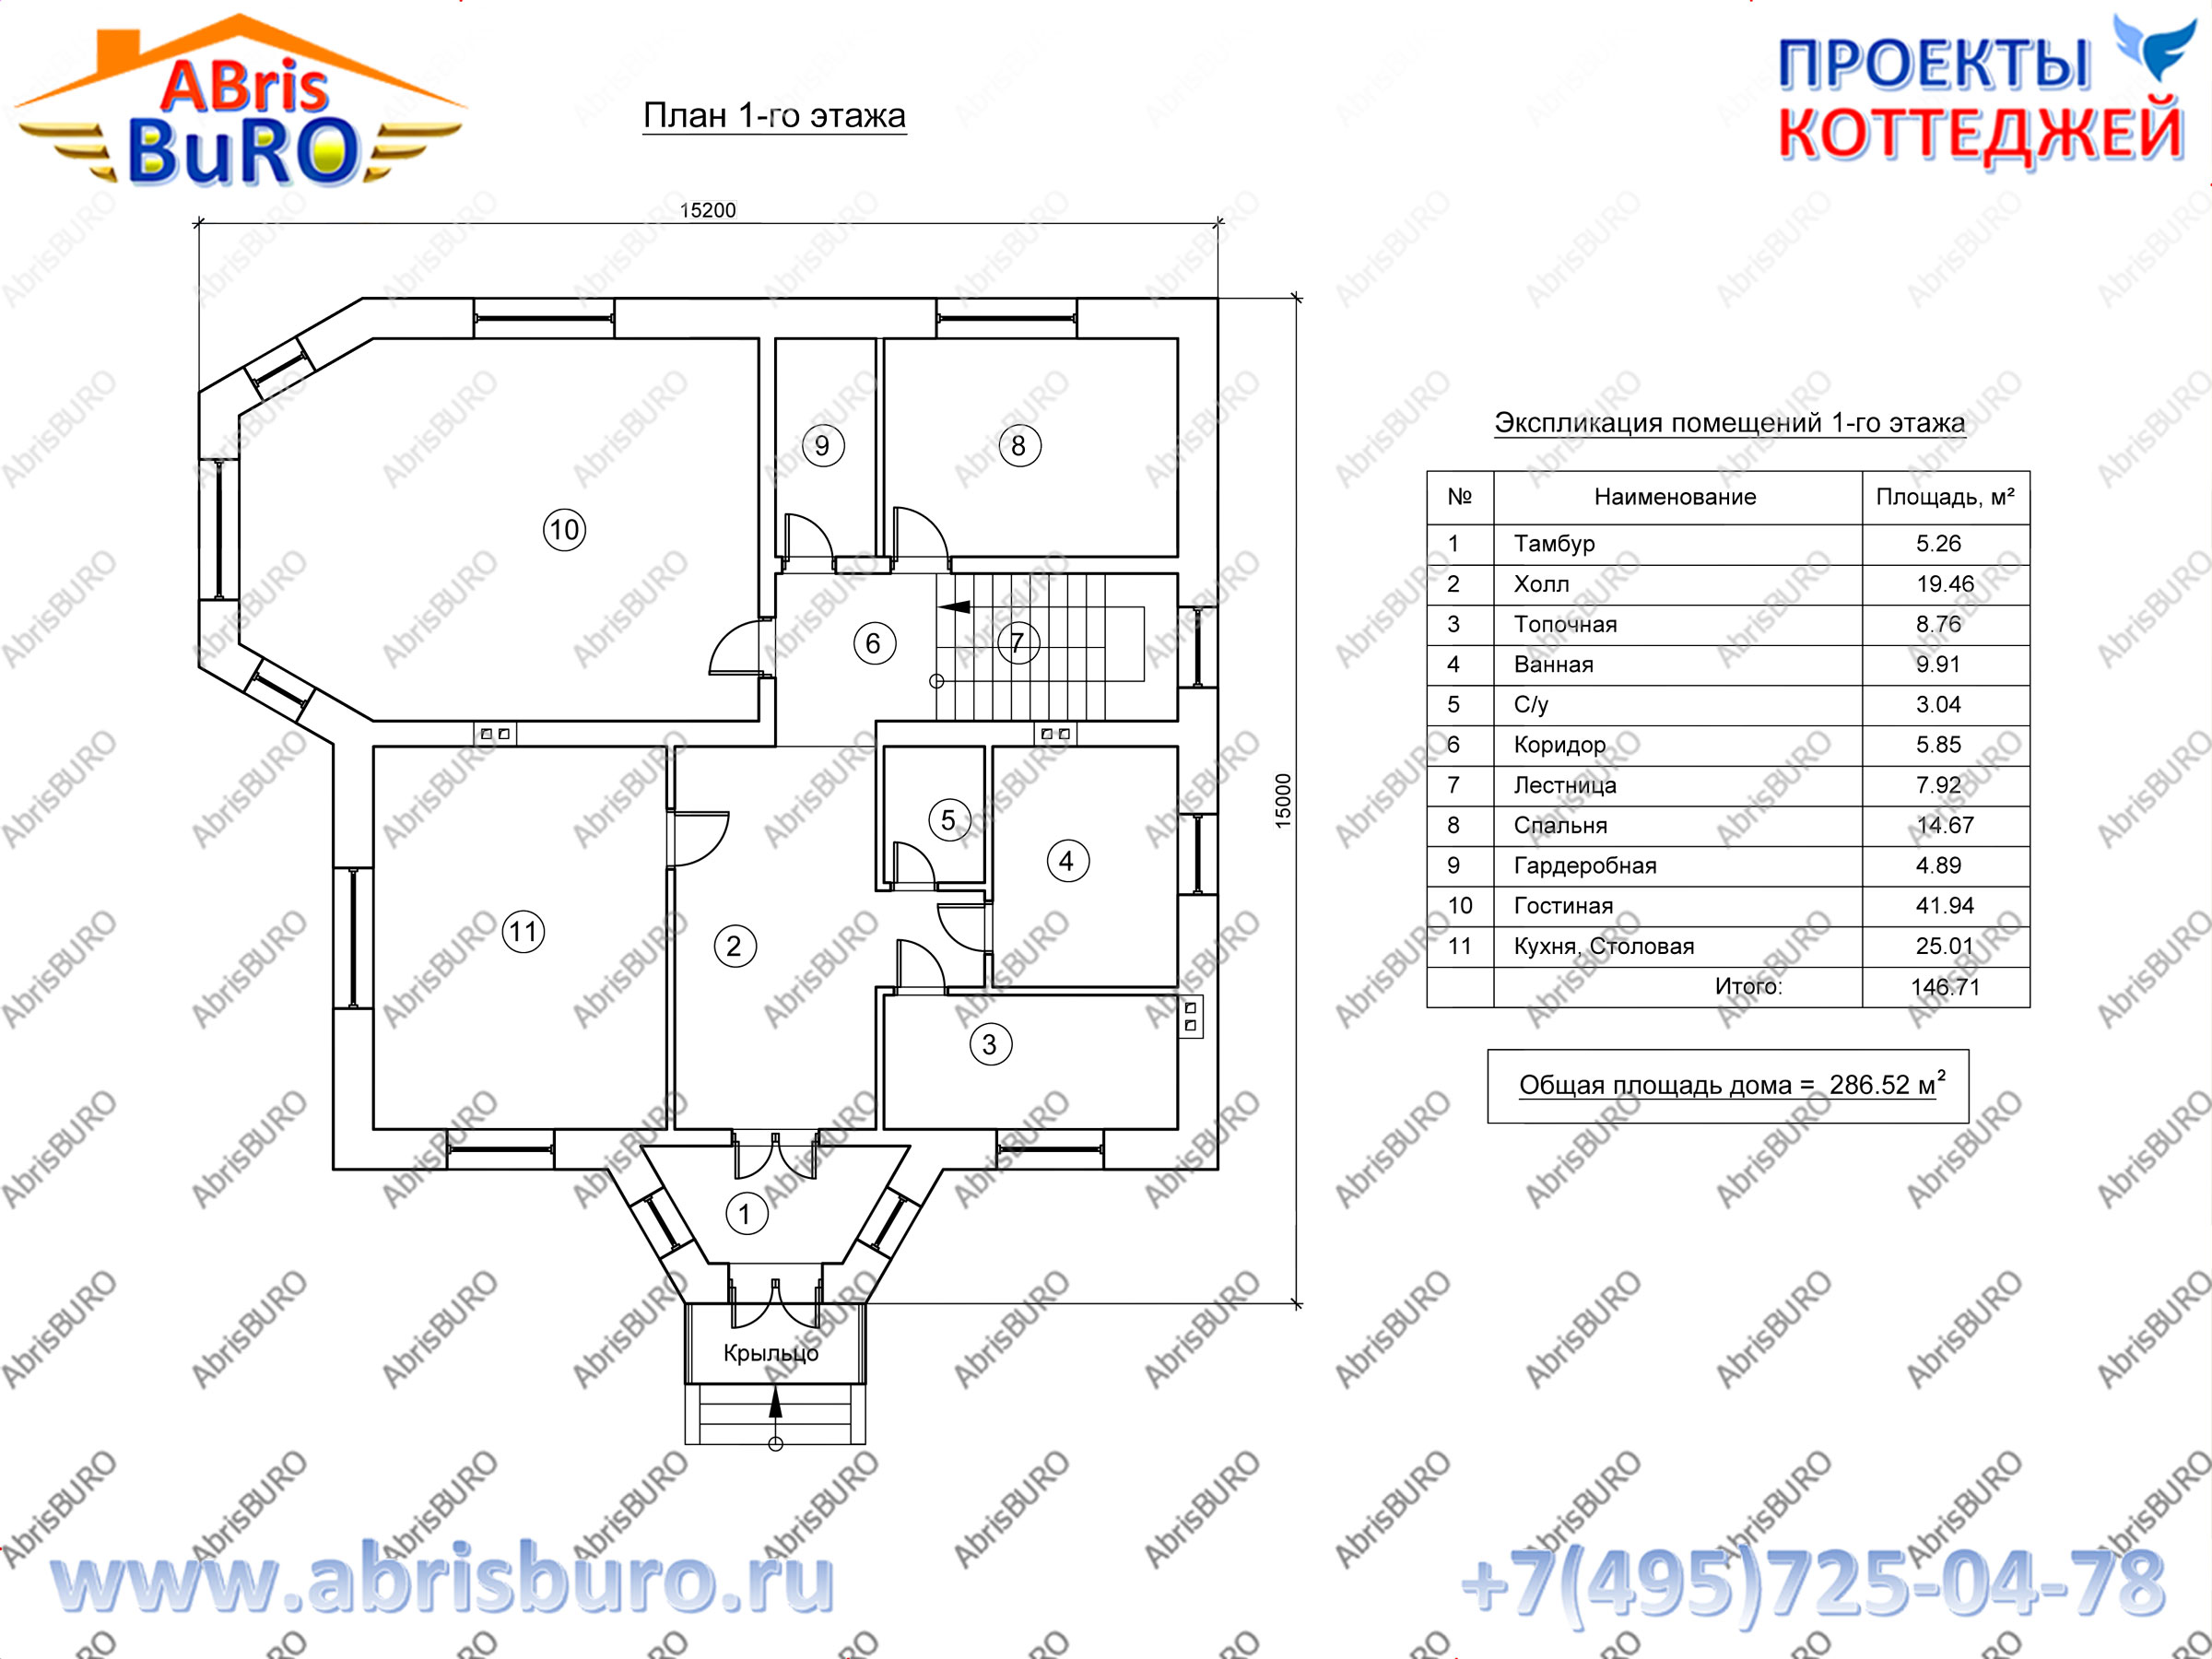 Планы домов и коттеджей на сайте www.abrisburo.ru